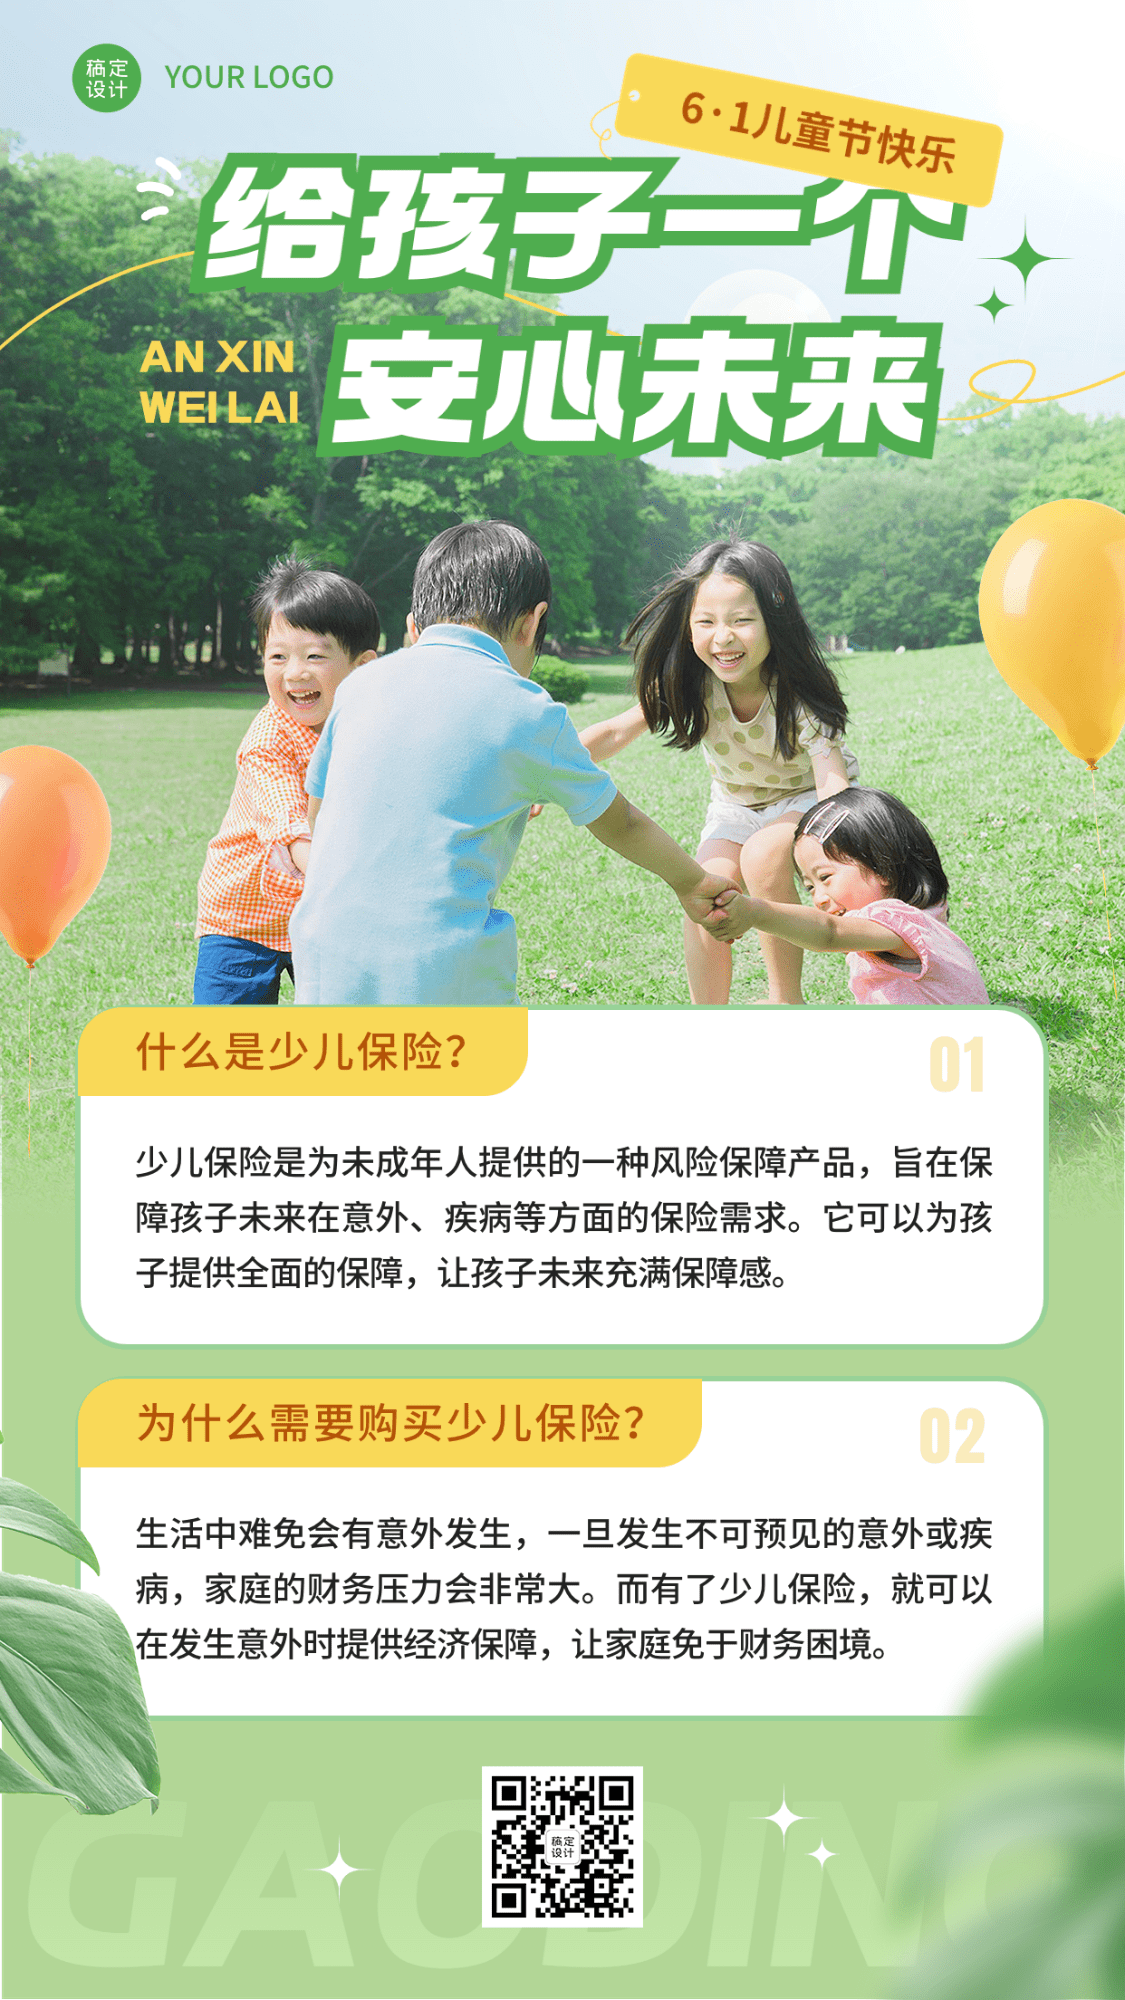 六一儿童节金融保险产品营销科普实景风手机海报预览效果